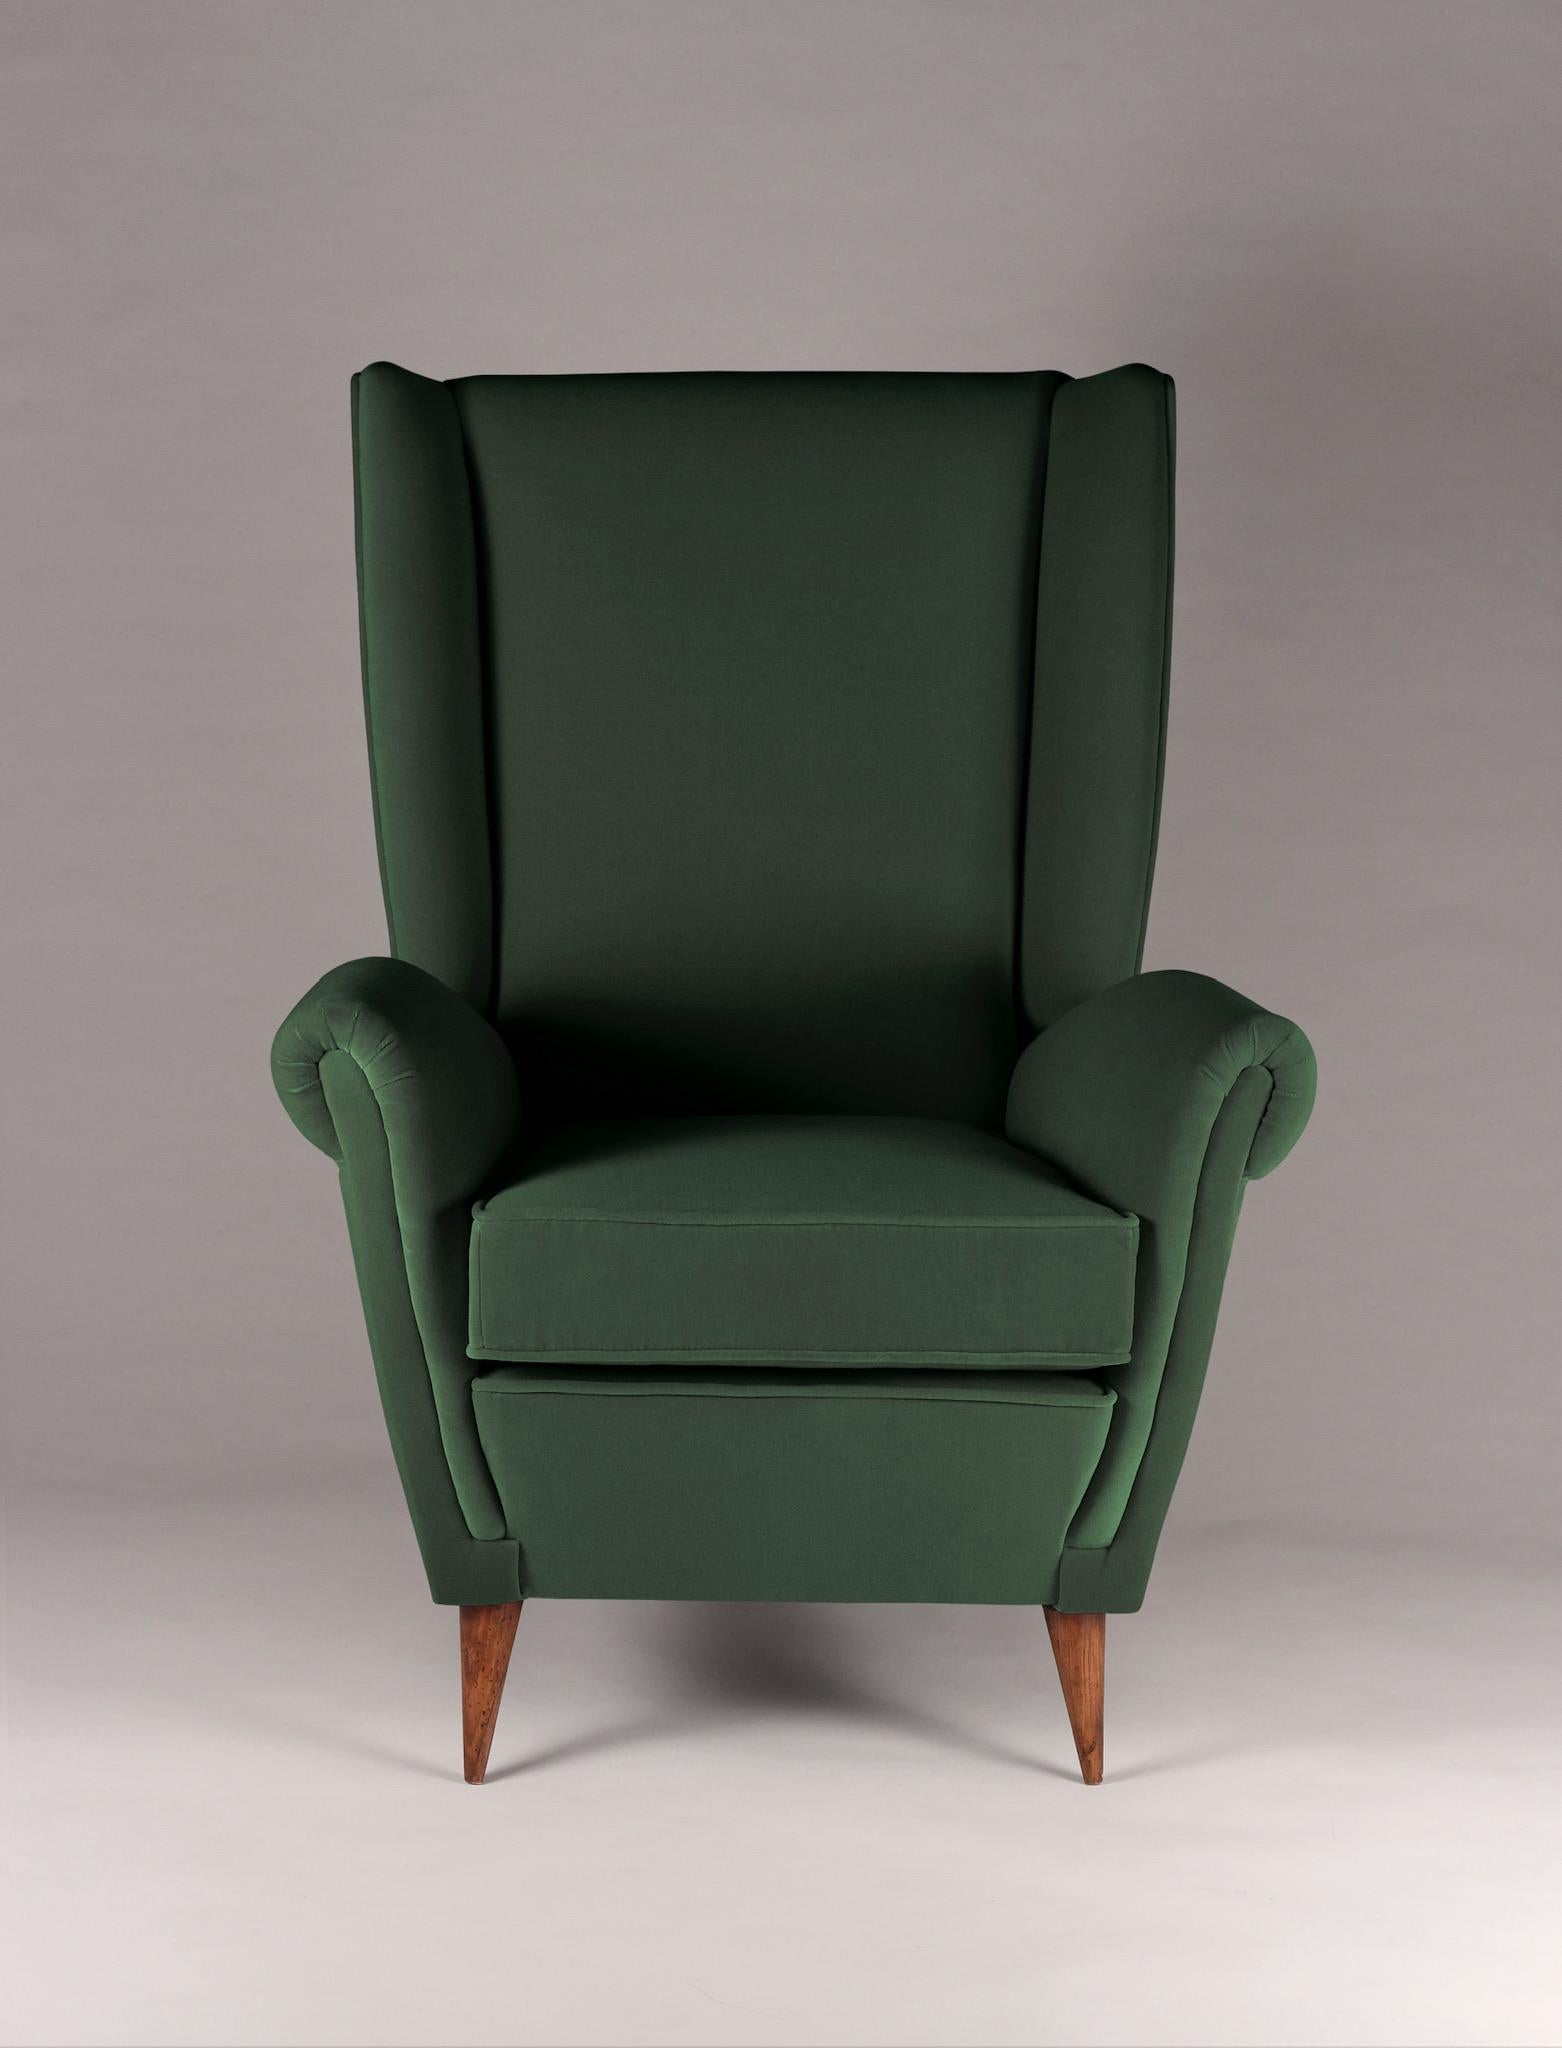 Der Loungesessel 'Marcello' mit hoher Rückenlehne wurde vom stilvollen italienischen Design der 1950er Jahre inspiriert und wird nun von englischen Handwerkern für das 21. Wir haben einen Loungesessel entwickelt, der in beliebiger Anzahl nach Ihren